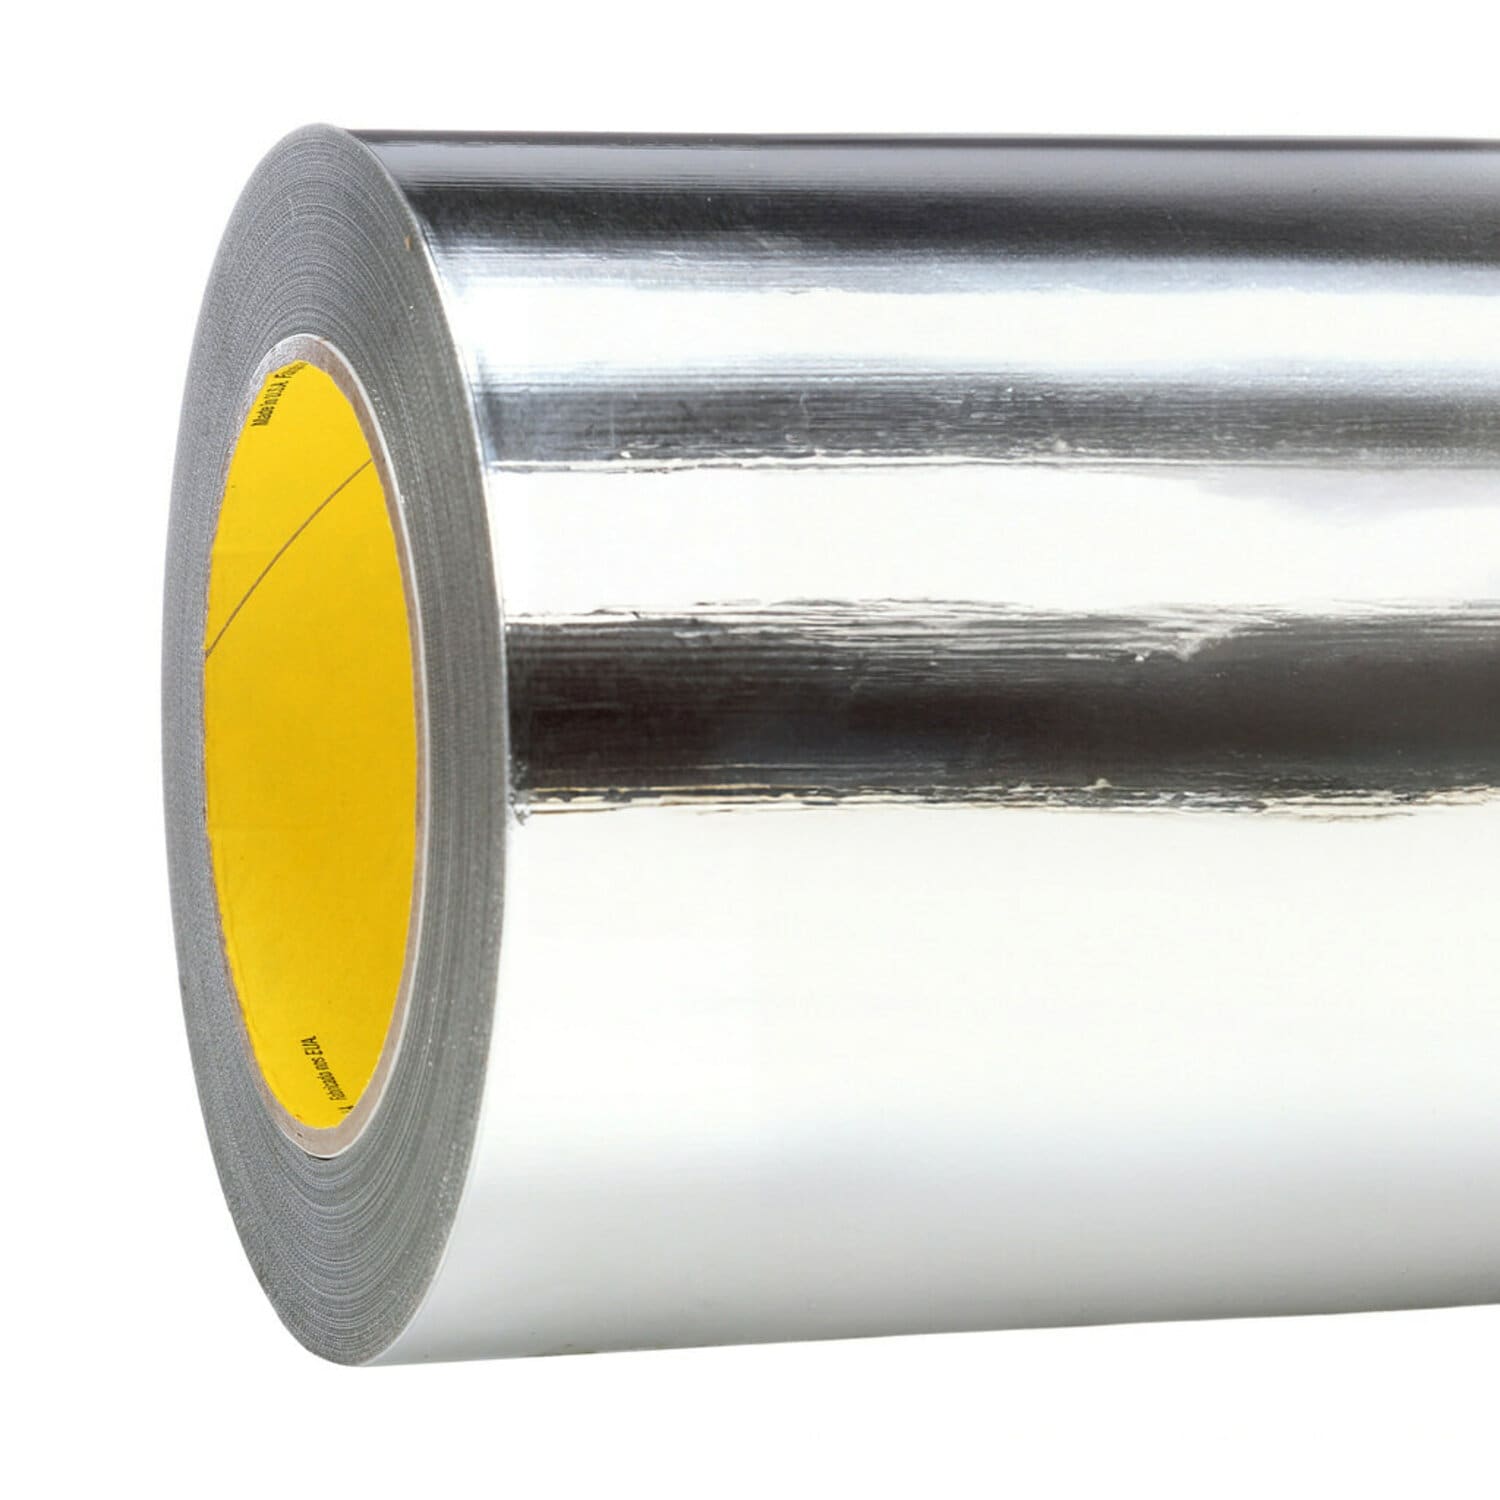 7010379715 - 3M Aluminum Foil Tape 427, Silver, 16 in x 60 yd, 4.6 mil, 1 roll per
case